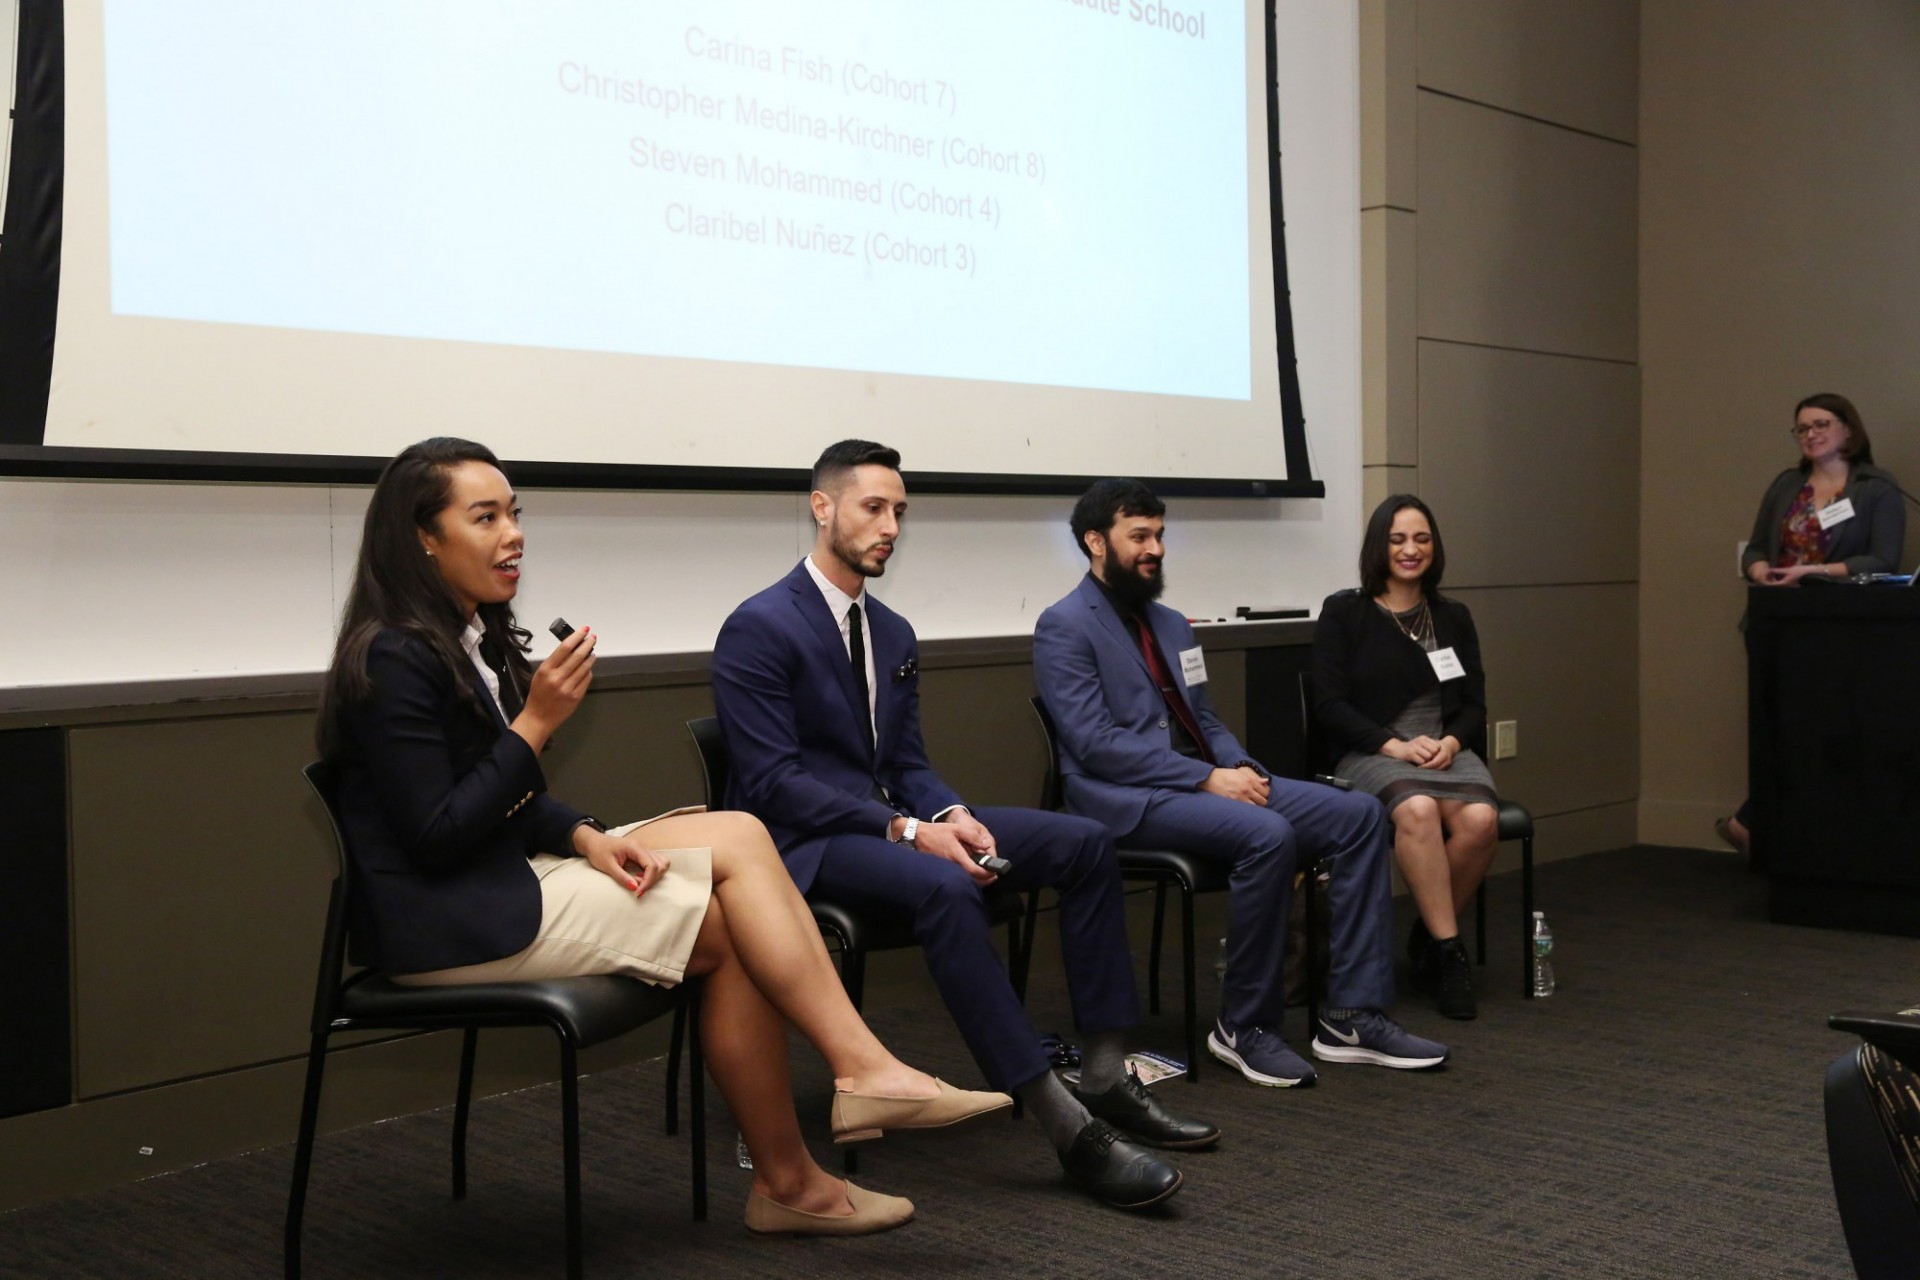 Alumni Panel: Being an Underrepresented Minority in Graduate School